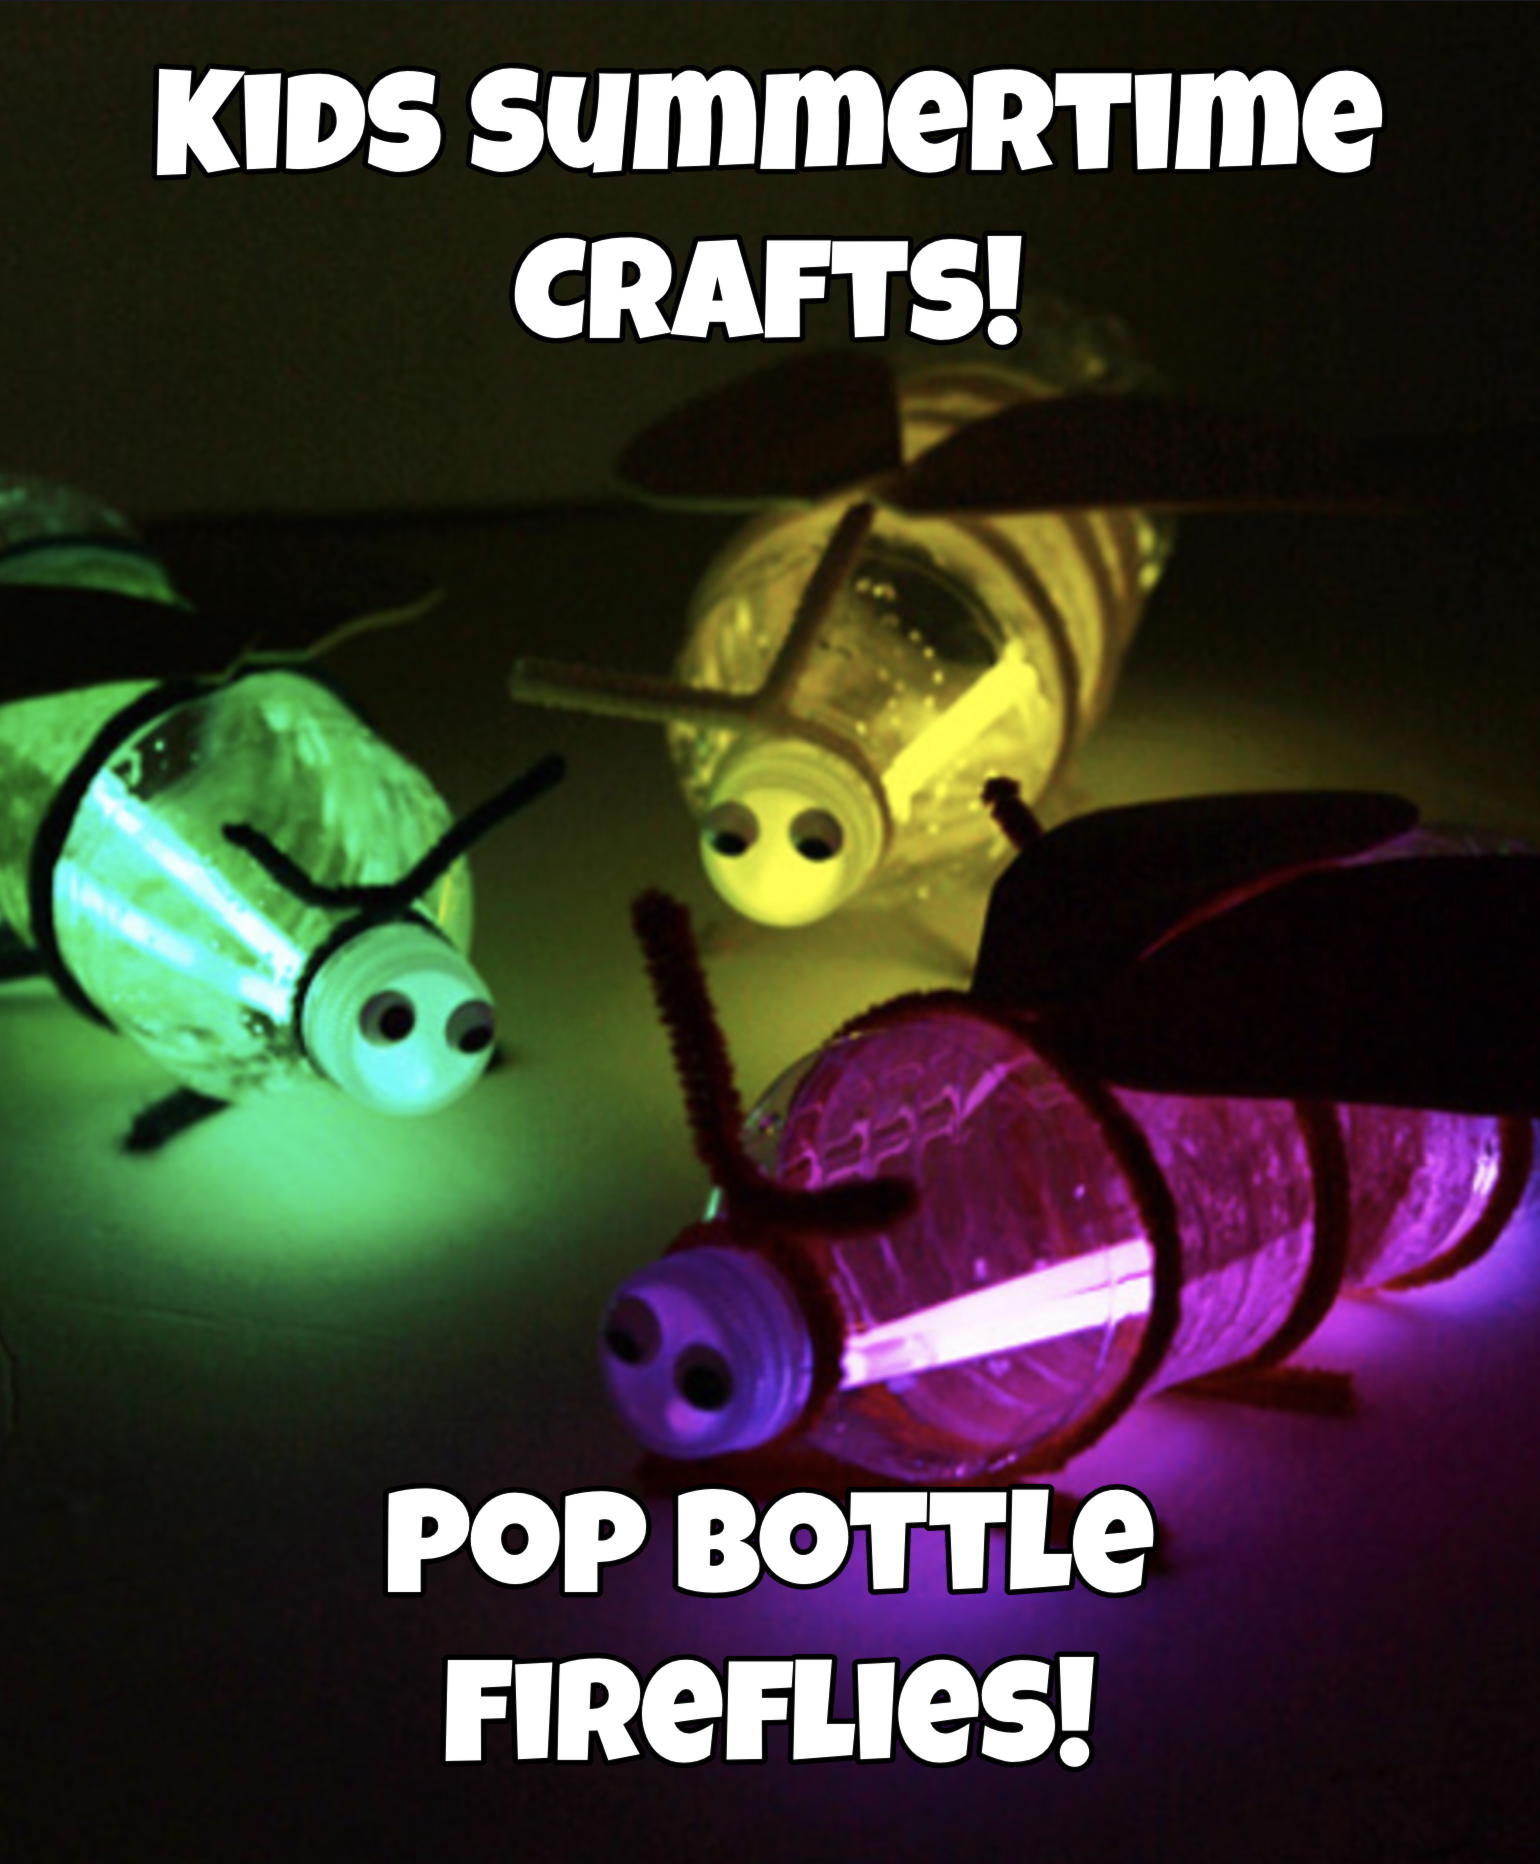 Summertime Kids Craft: Pop Bottle Fireflies